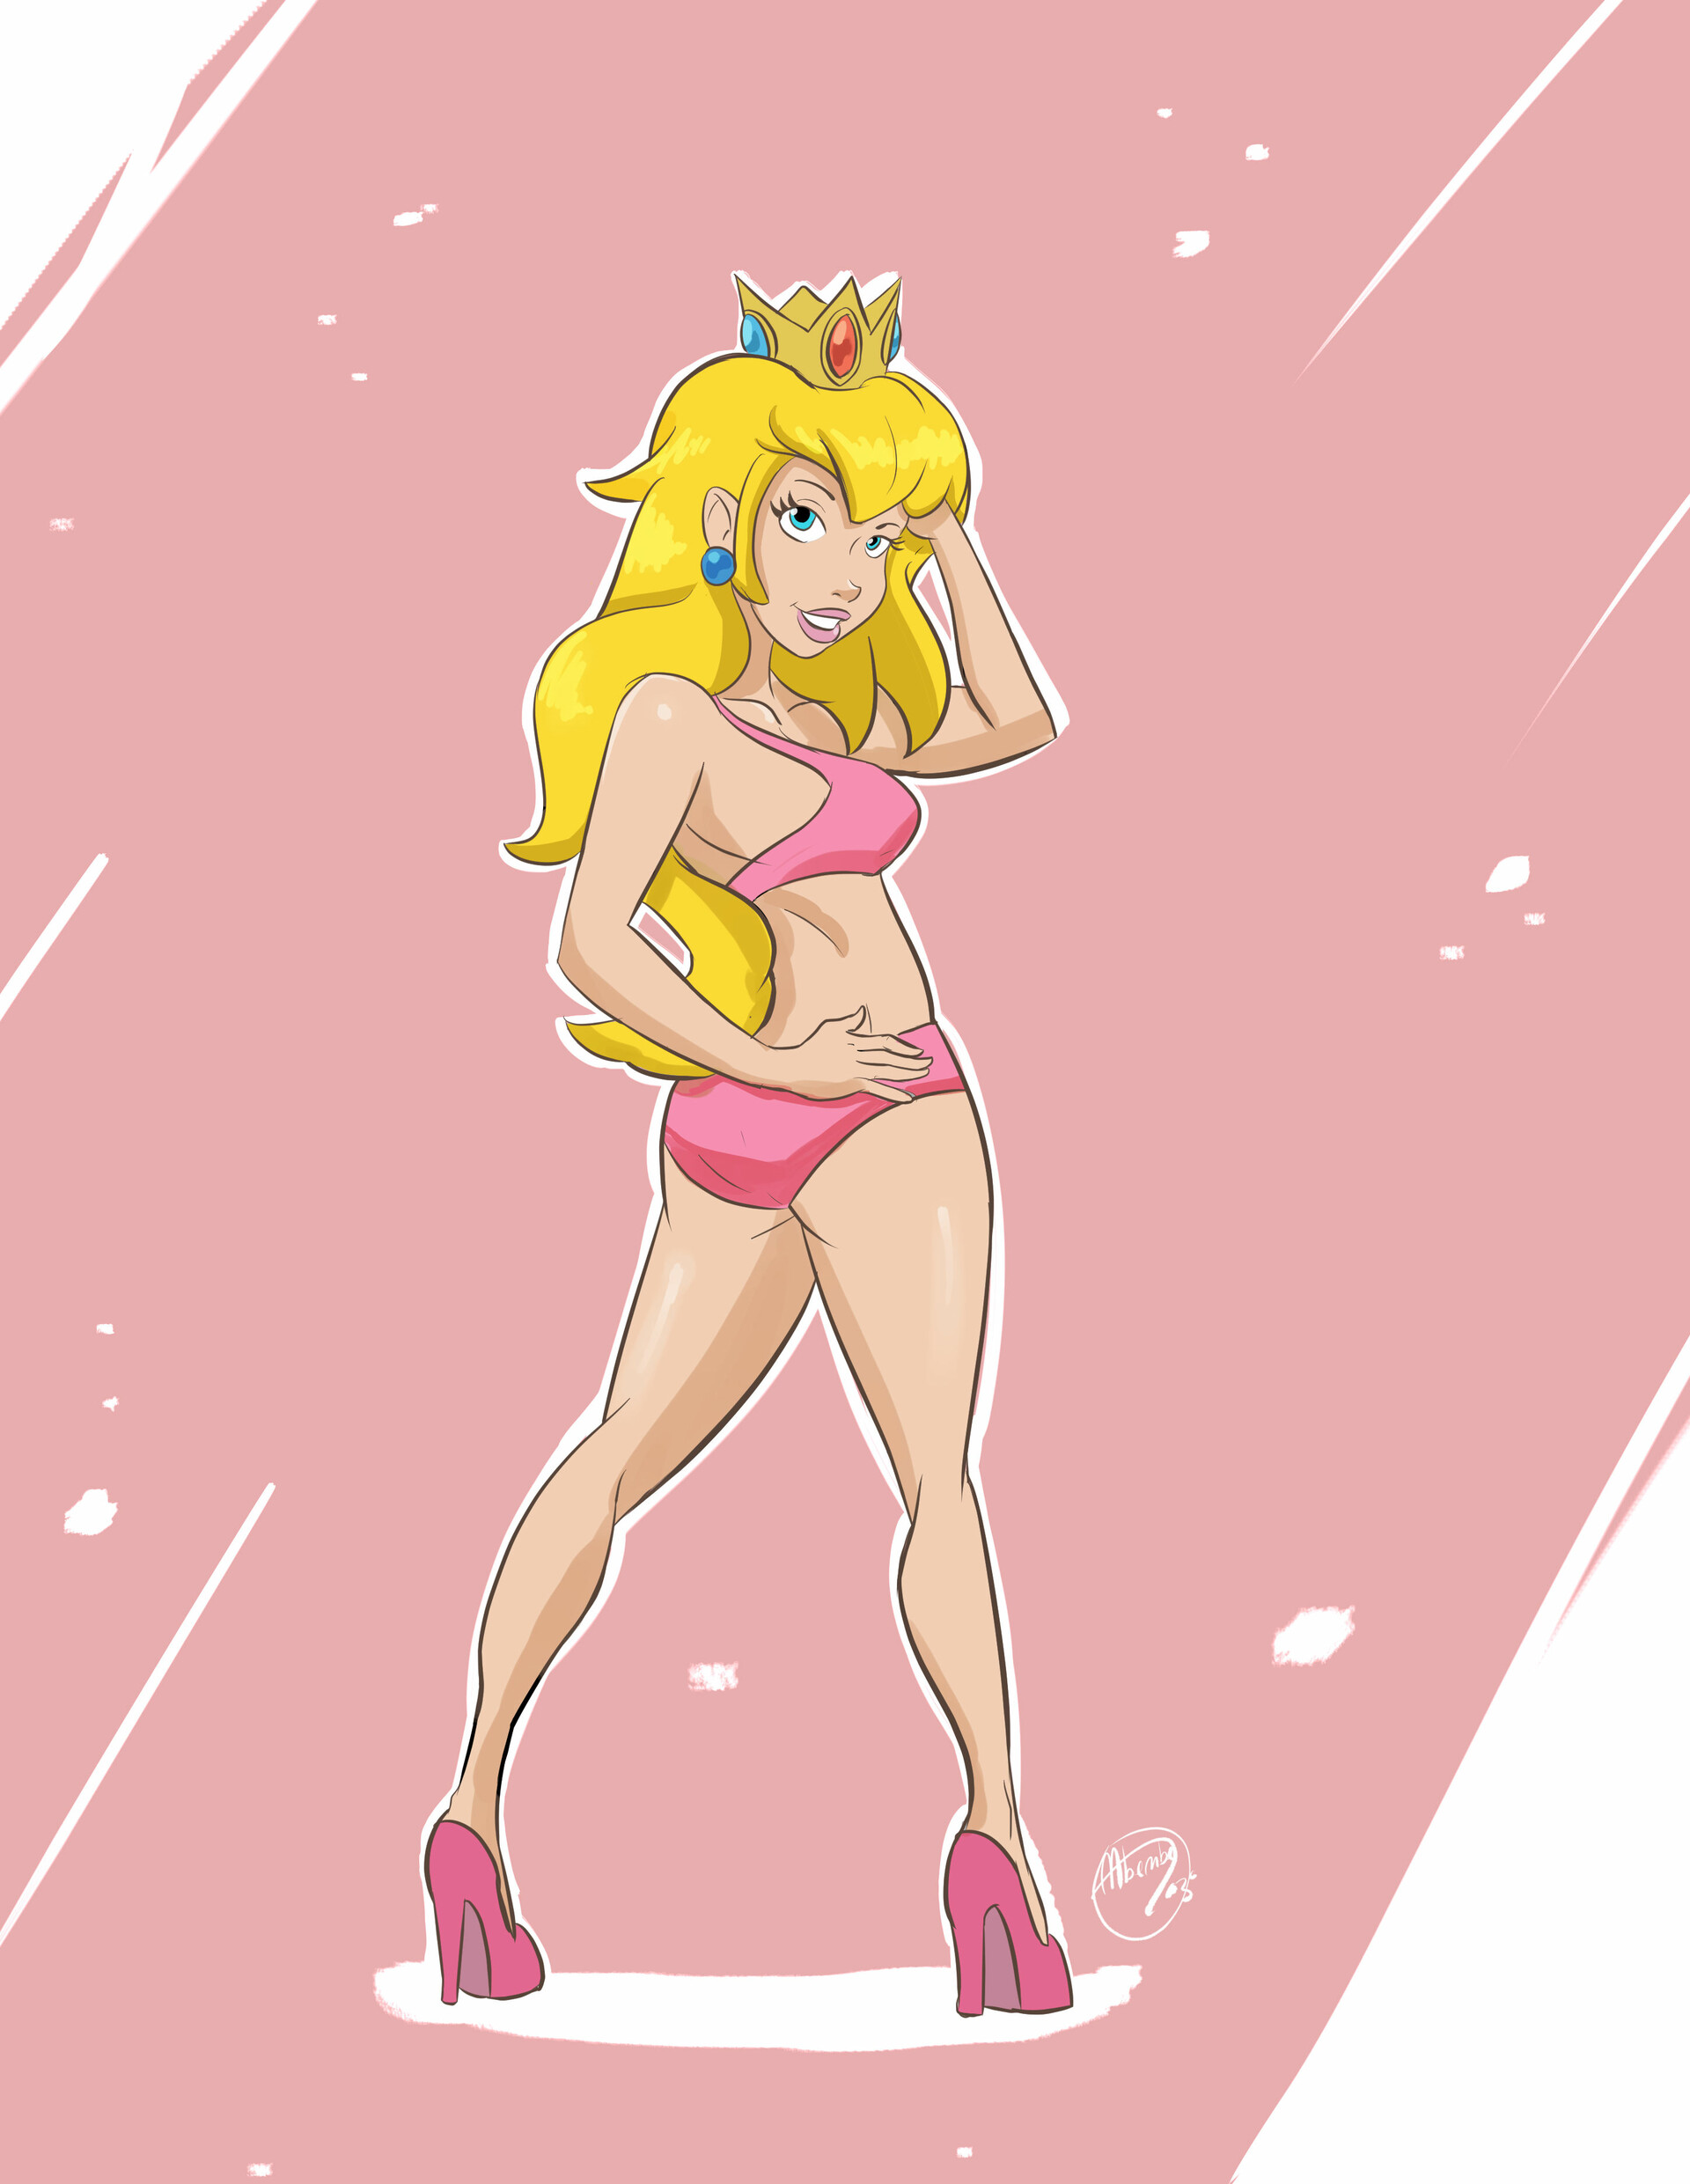 Princess peach bra